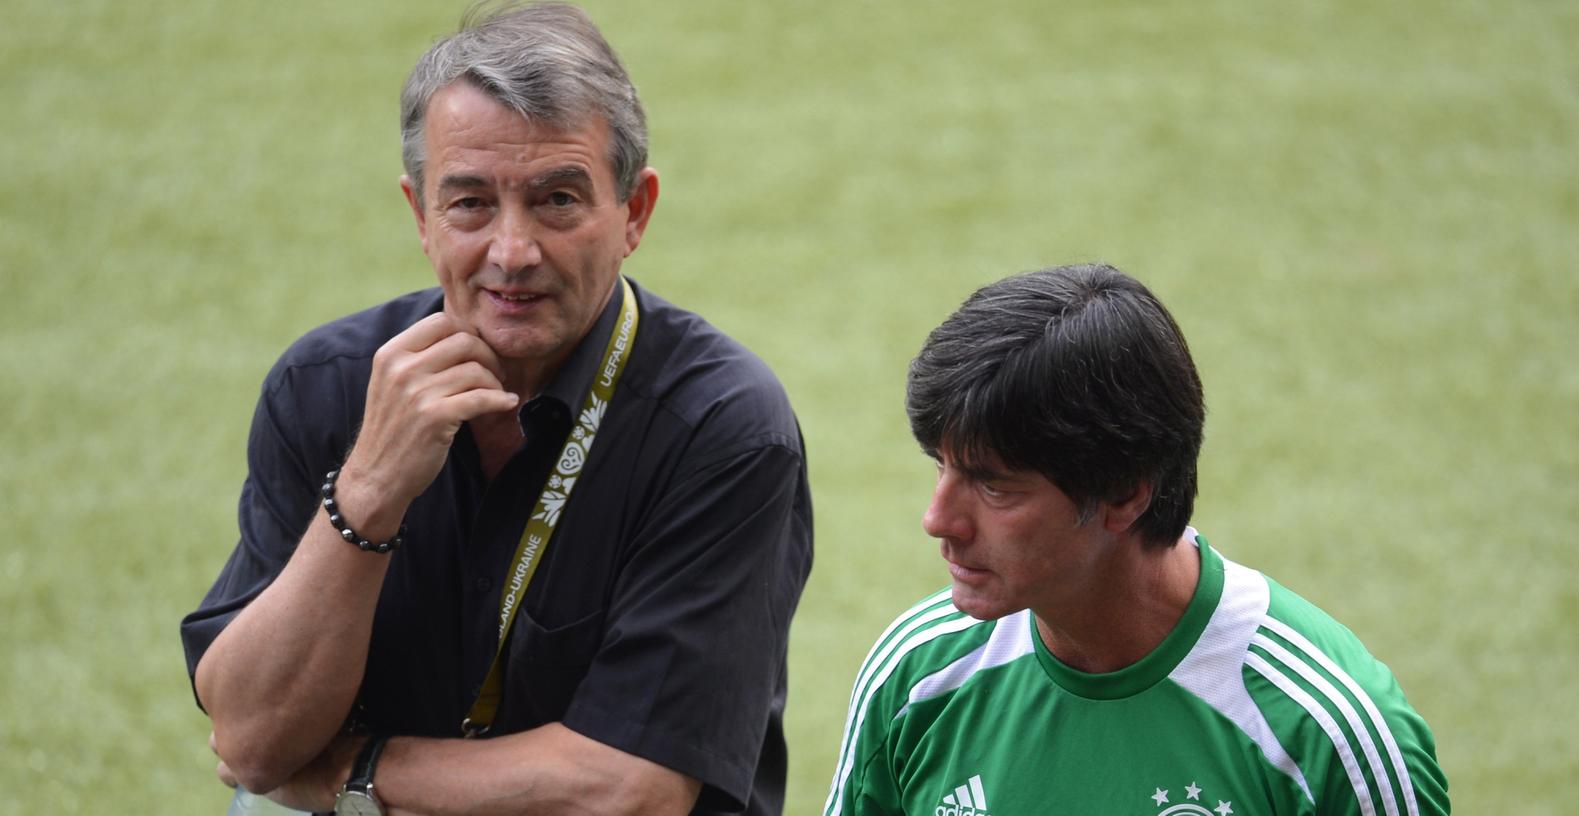 Wolfgang Niersbach ist sicher, dass Joachim Löw die Nationalmannschaft zur EM führen wird.